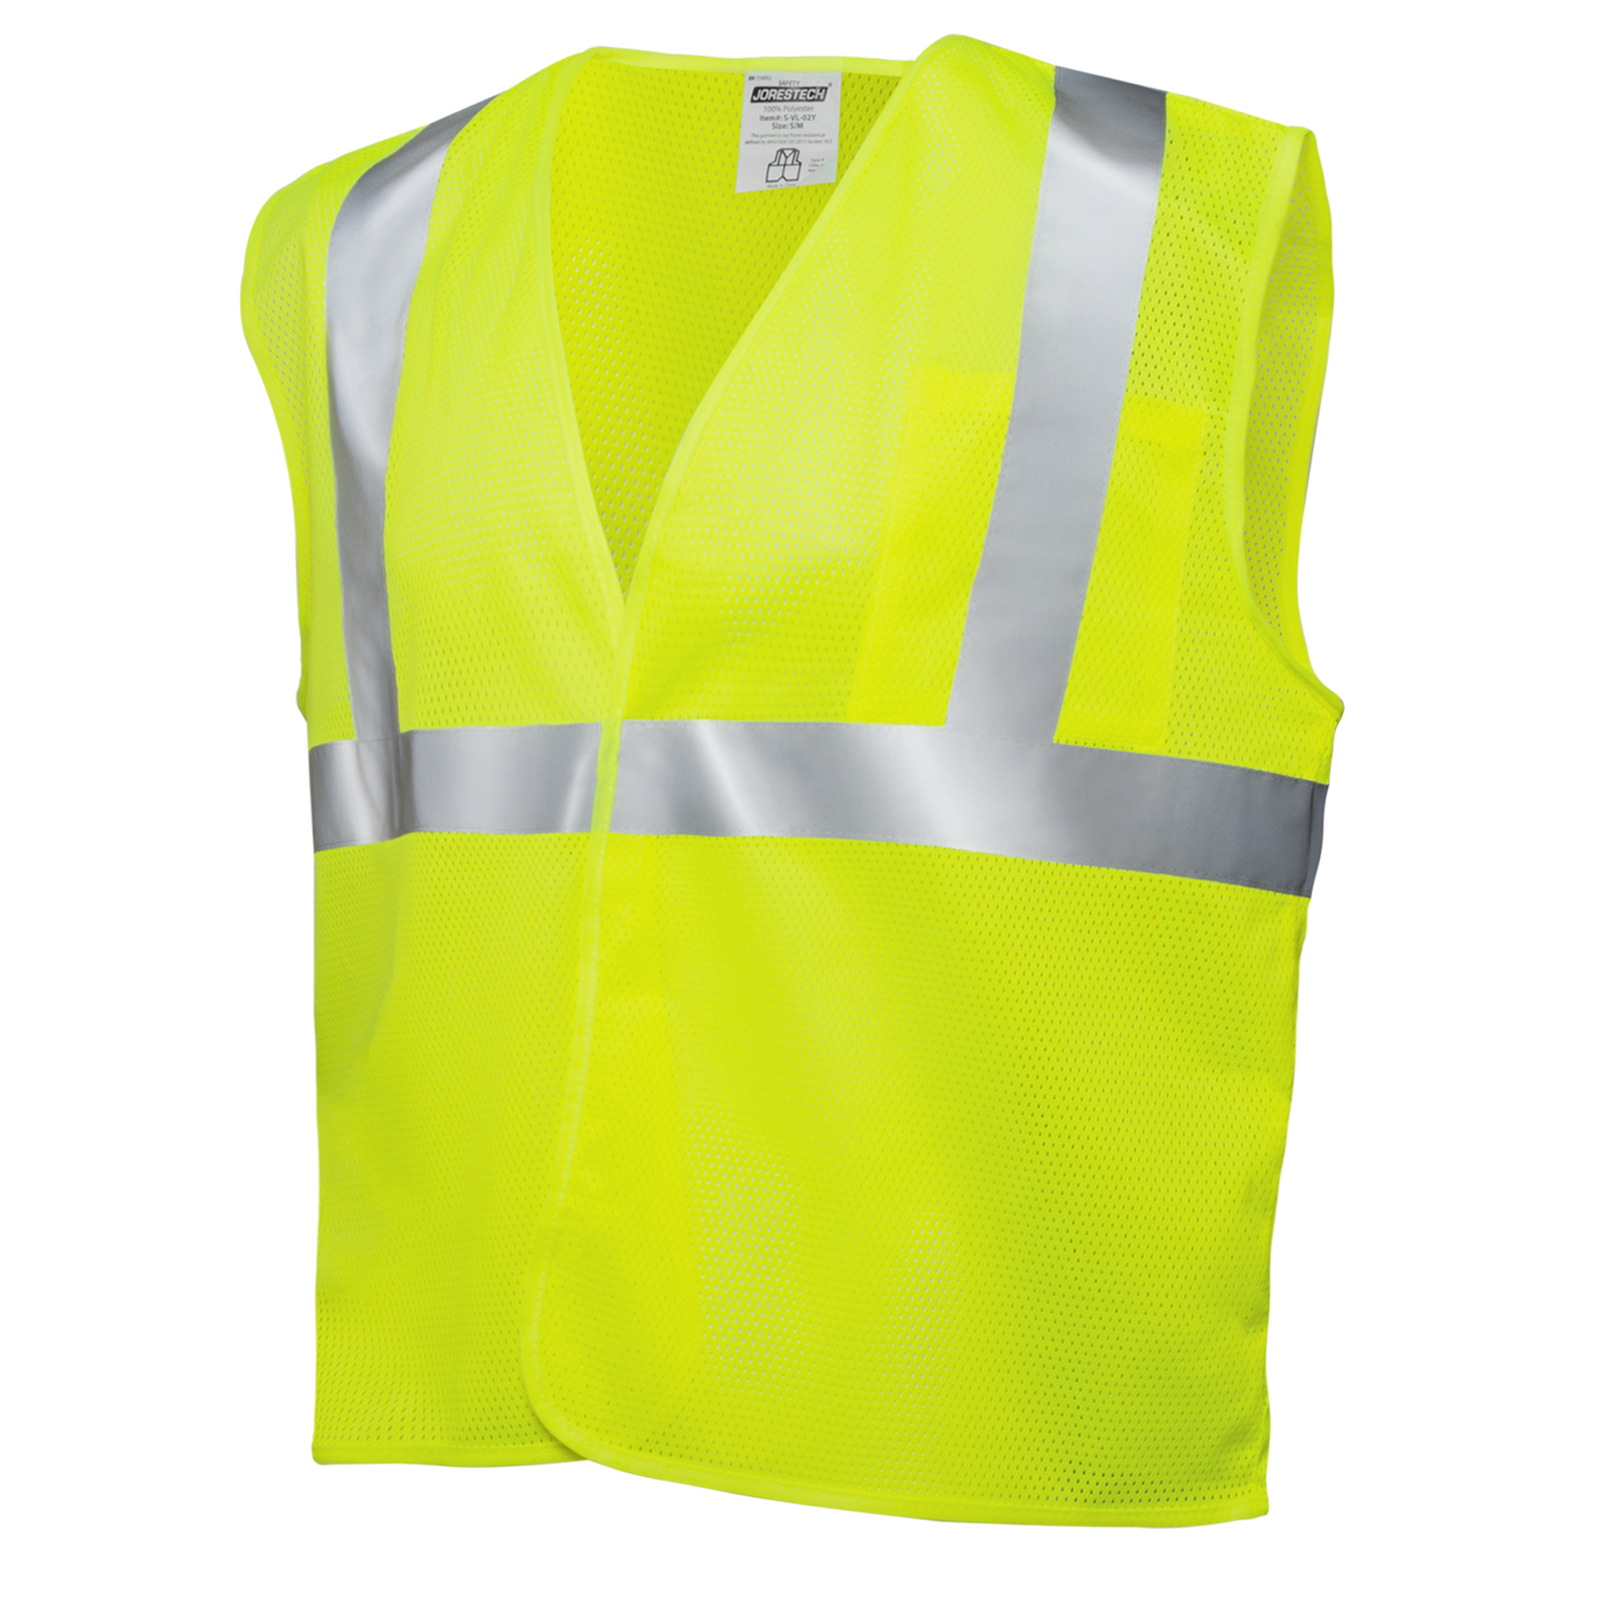 Hi-Vis Mesh Safety Vest with 2” Reflective Strips and Pocket